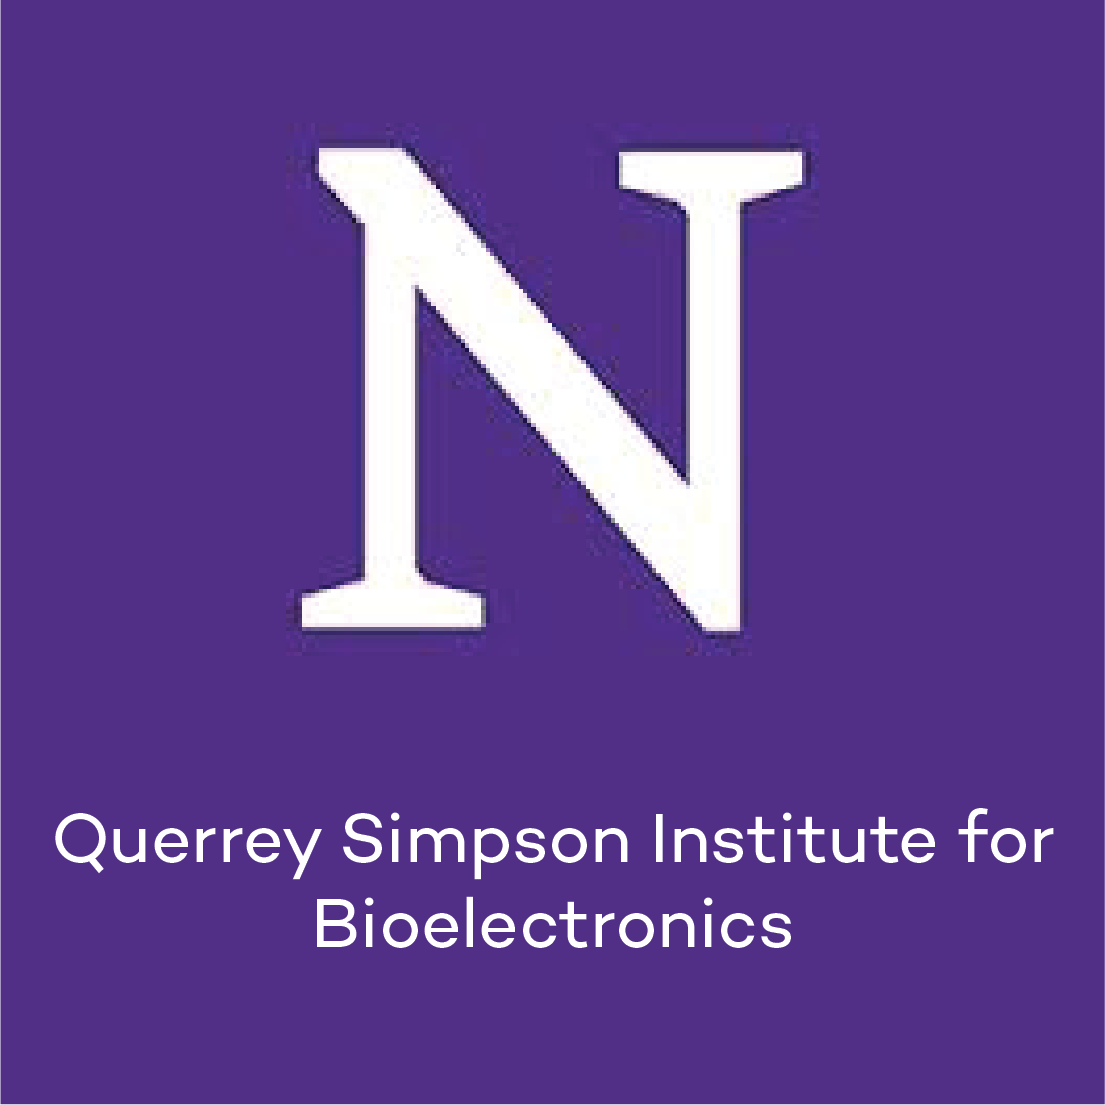 Querrey Simpson Institute for Bioelectronics